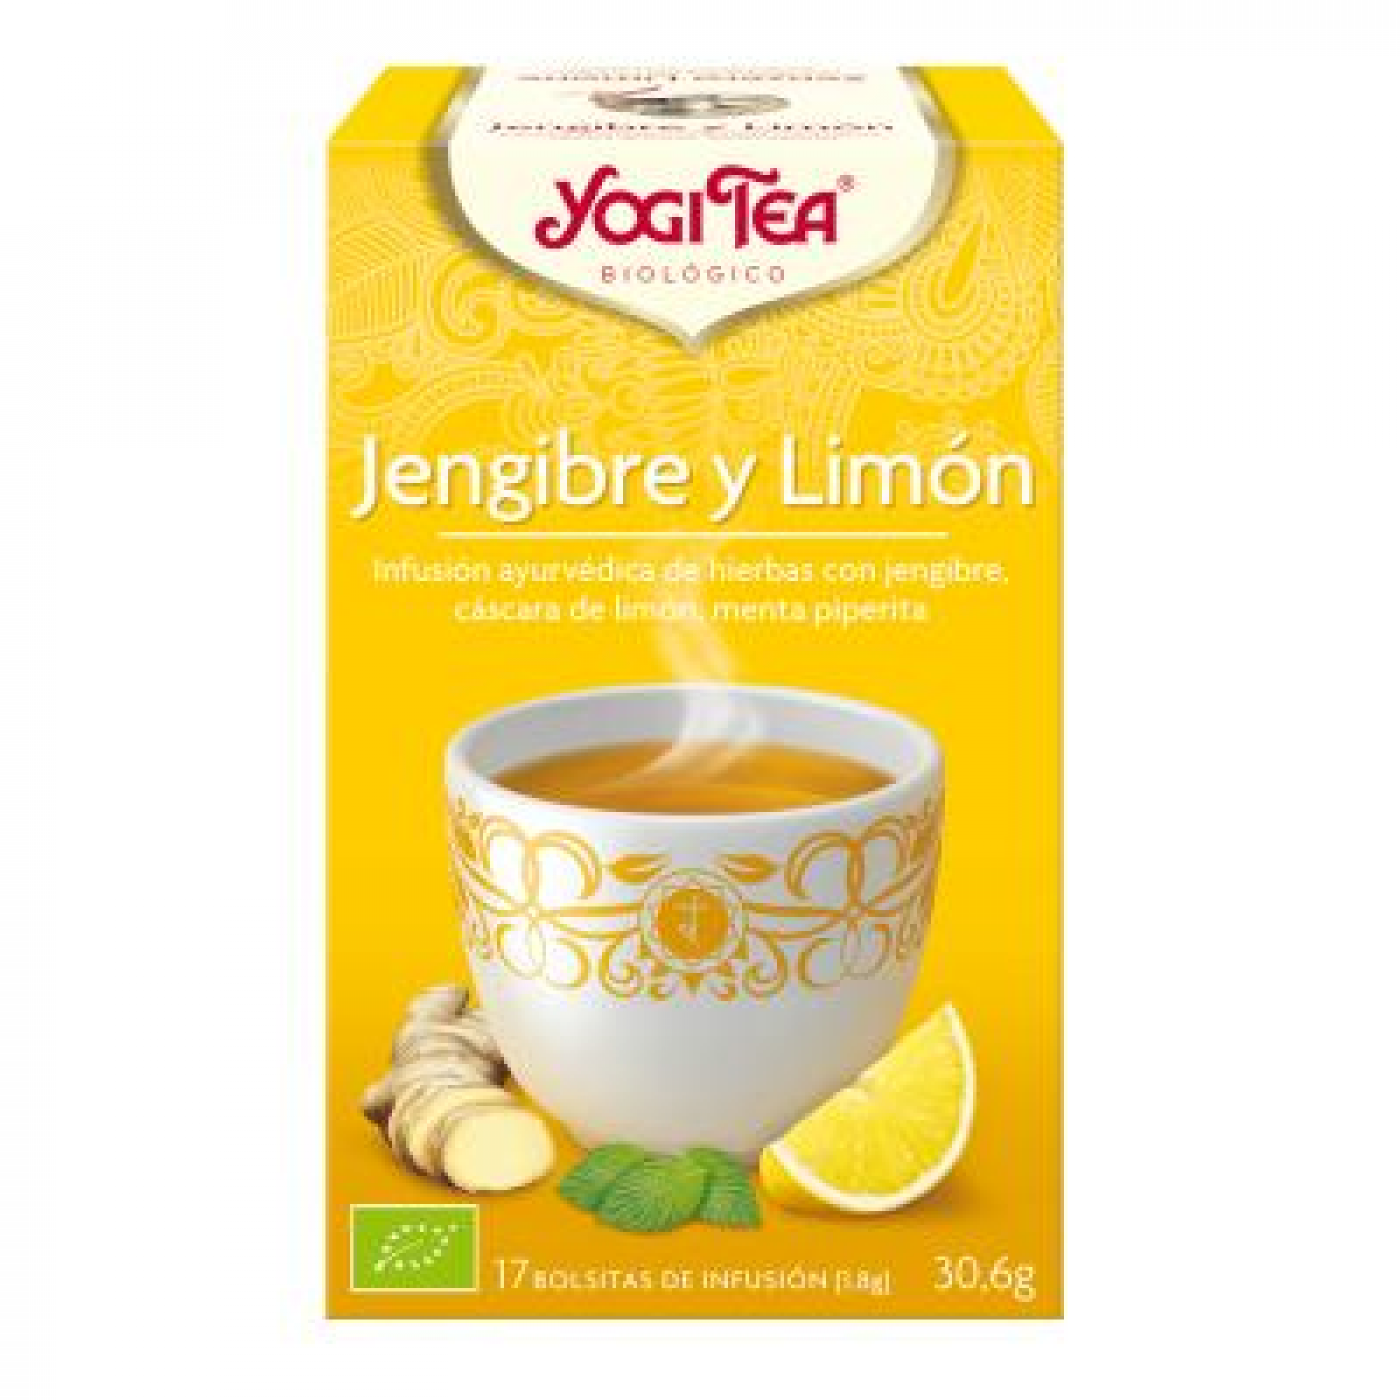 Yogi Tea Jengibre y Limon 17 Bolsitas